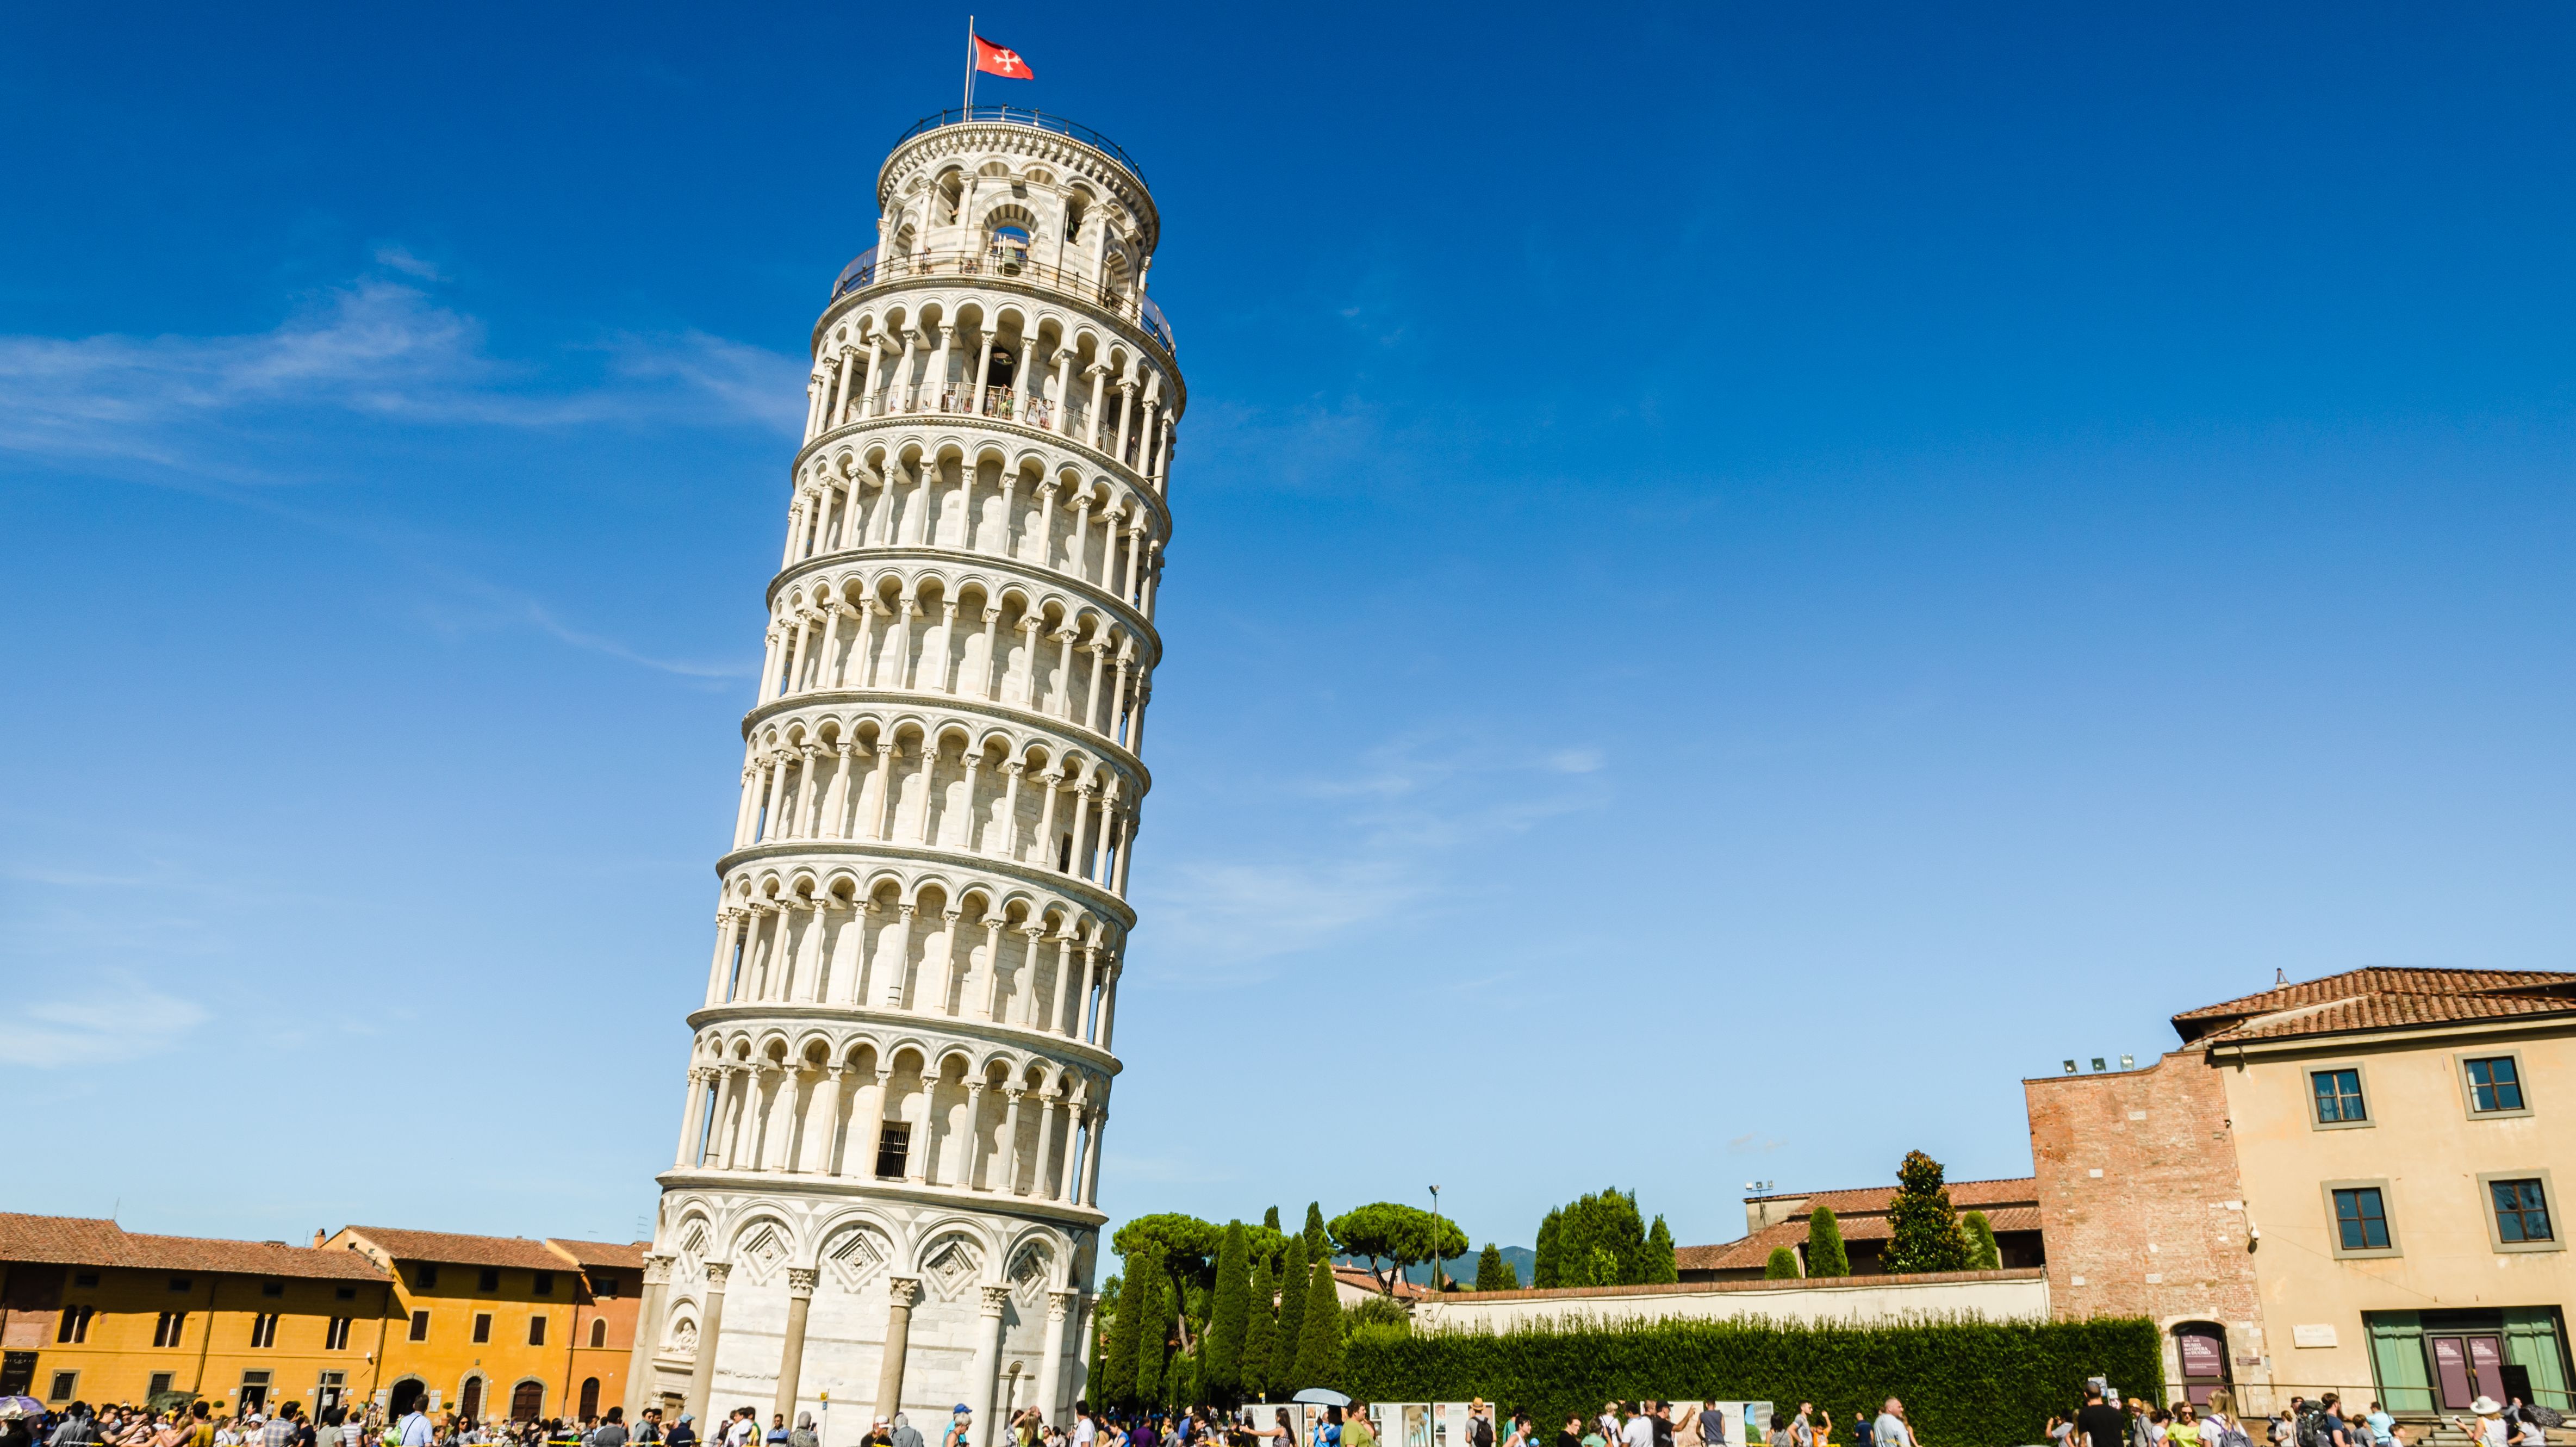 Какая башня изображена. Пизанская башня Италия. Пизанская (Падающая) башня (Пиза, Италия). Достопримечательности Италии Пизанская башня. Рим Колизей Пизанская башня.